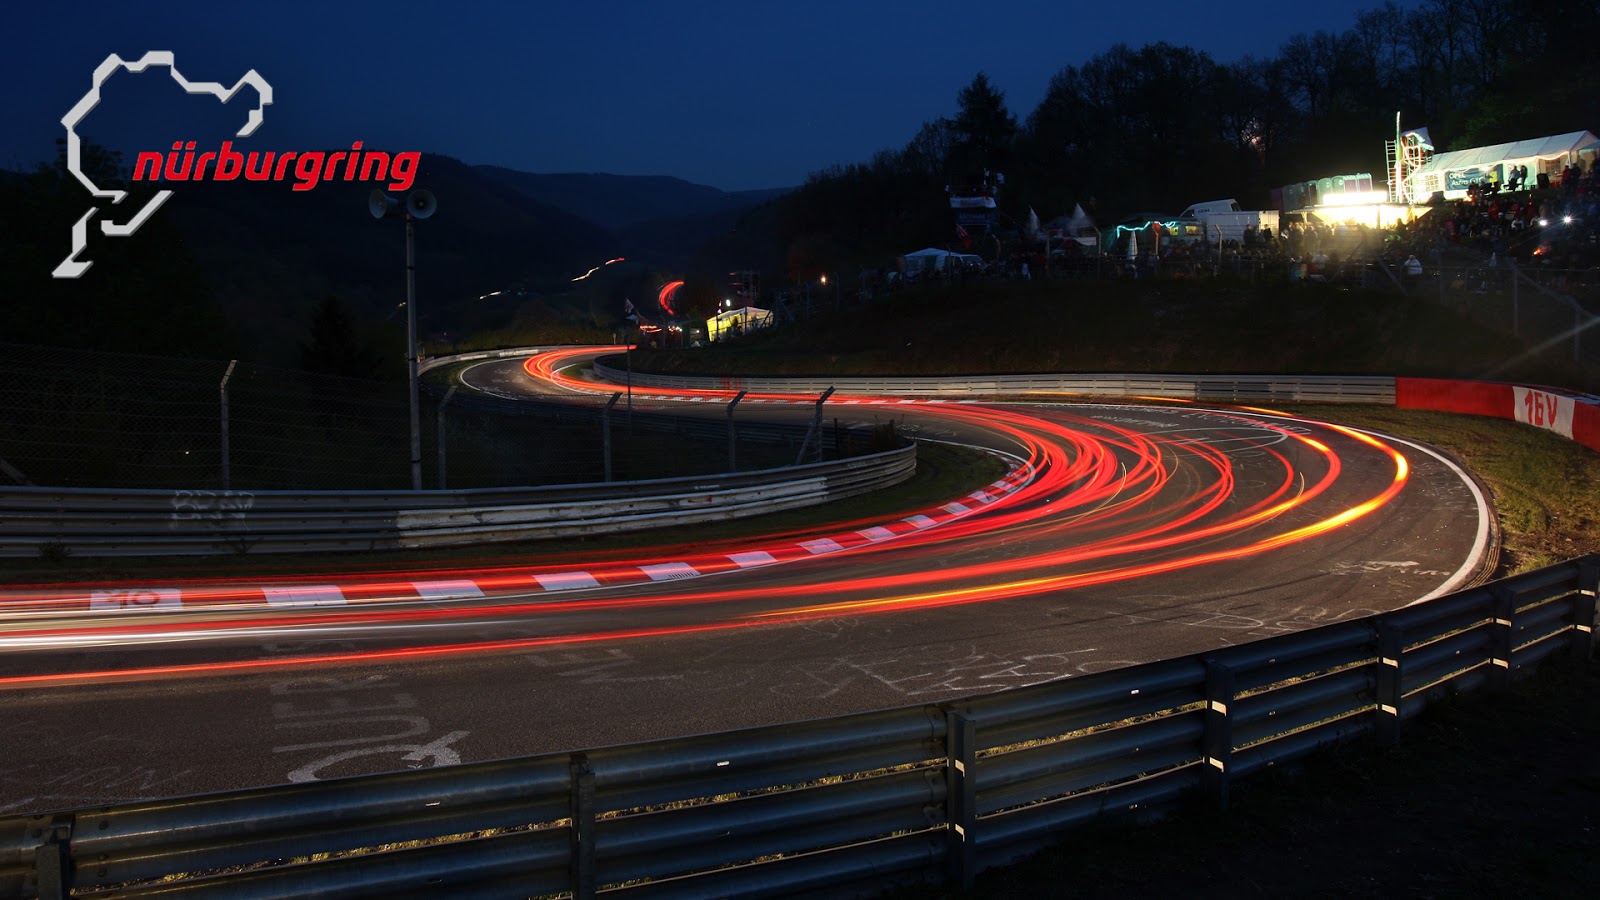 n25C325BCrburgring Χαράς ευαγγέλια για το Koenigsegg One:1, θα ξαναεπιτρέψουν στους κατασκευαστές να χρονομετρούν στην πίστα του Nürburgring